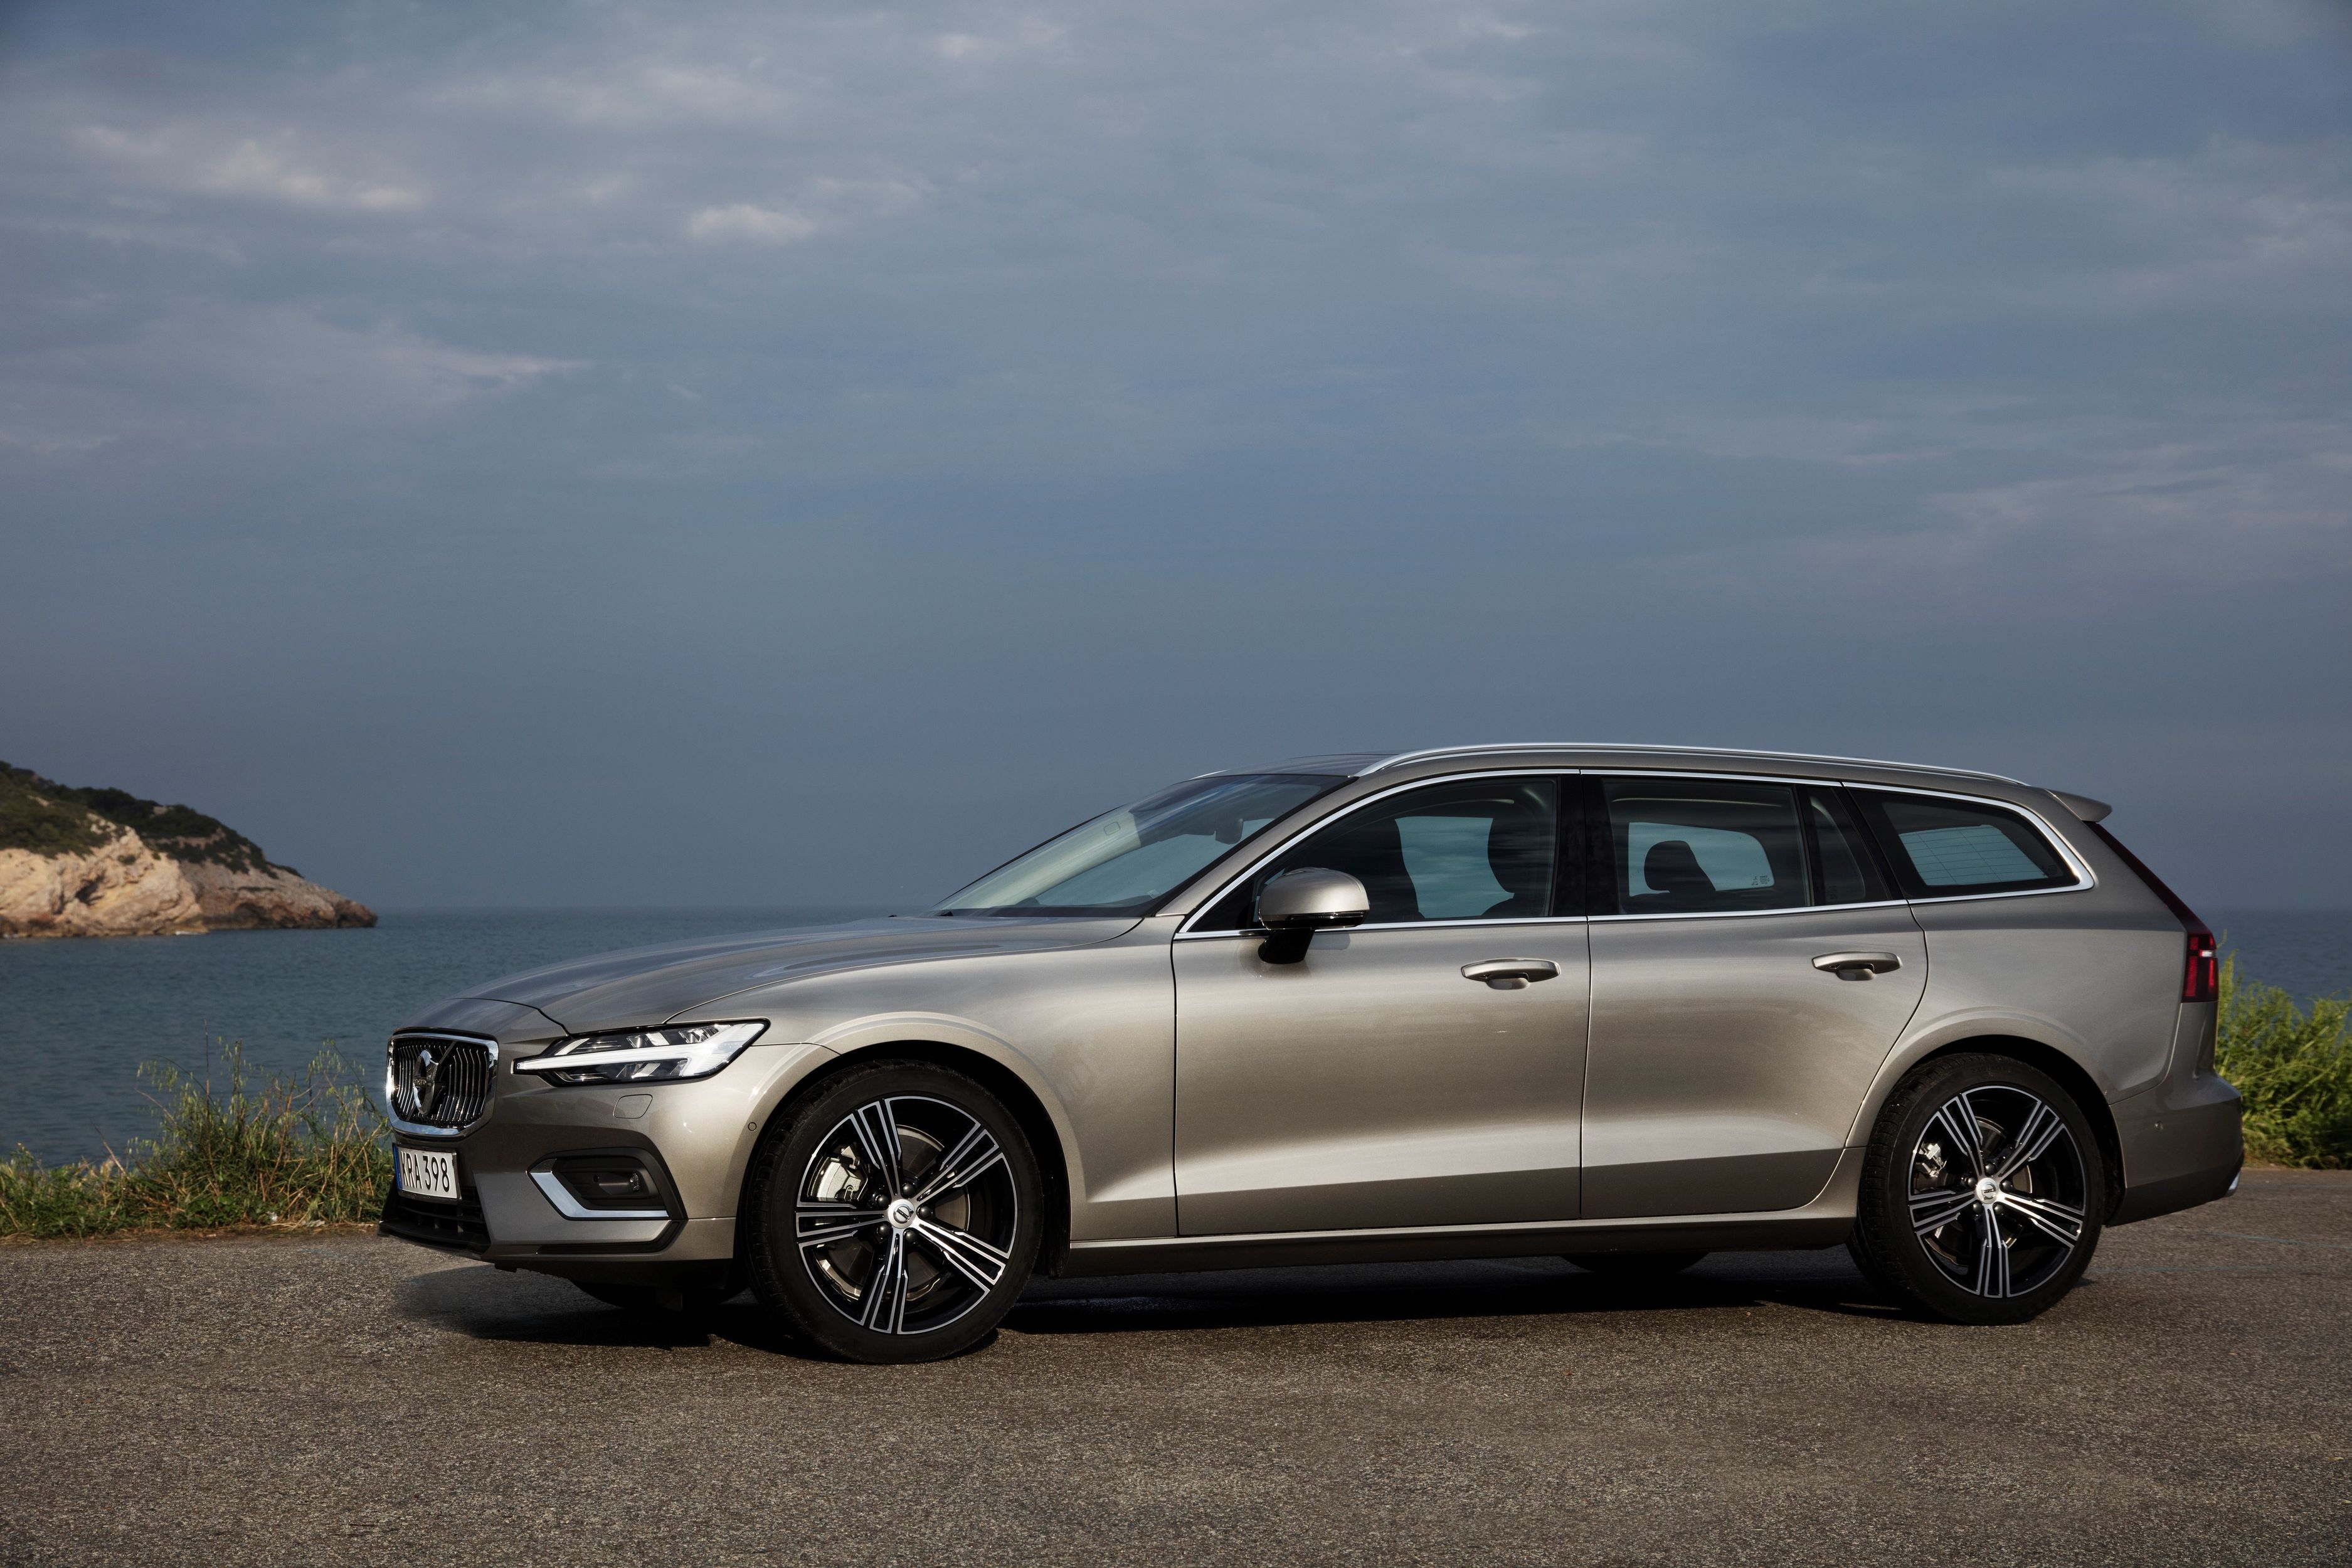 Volvo inicia pré-venda do V60 em junho